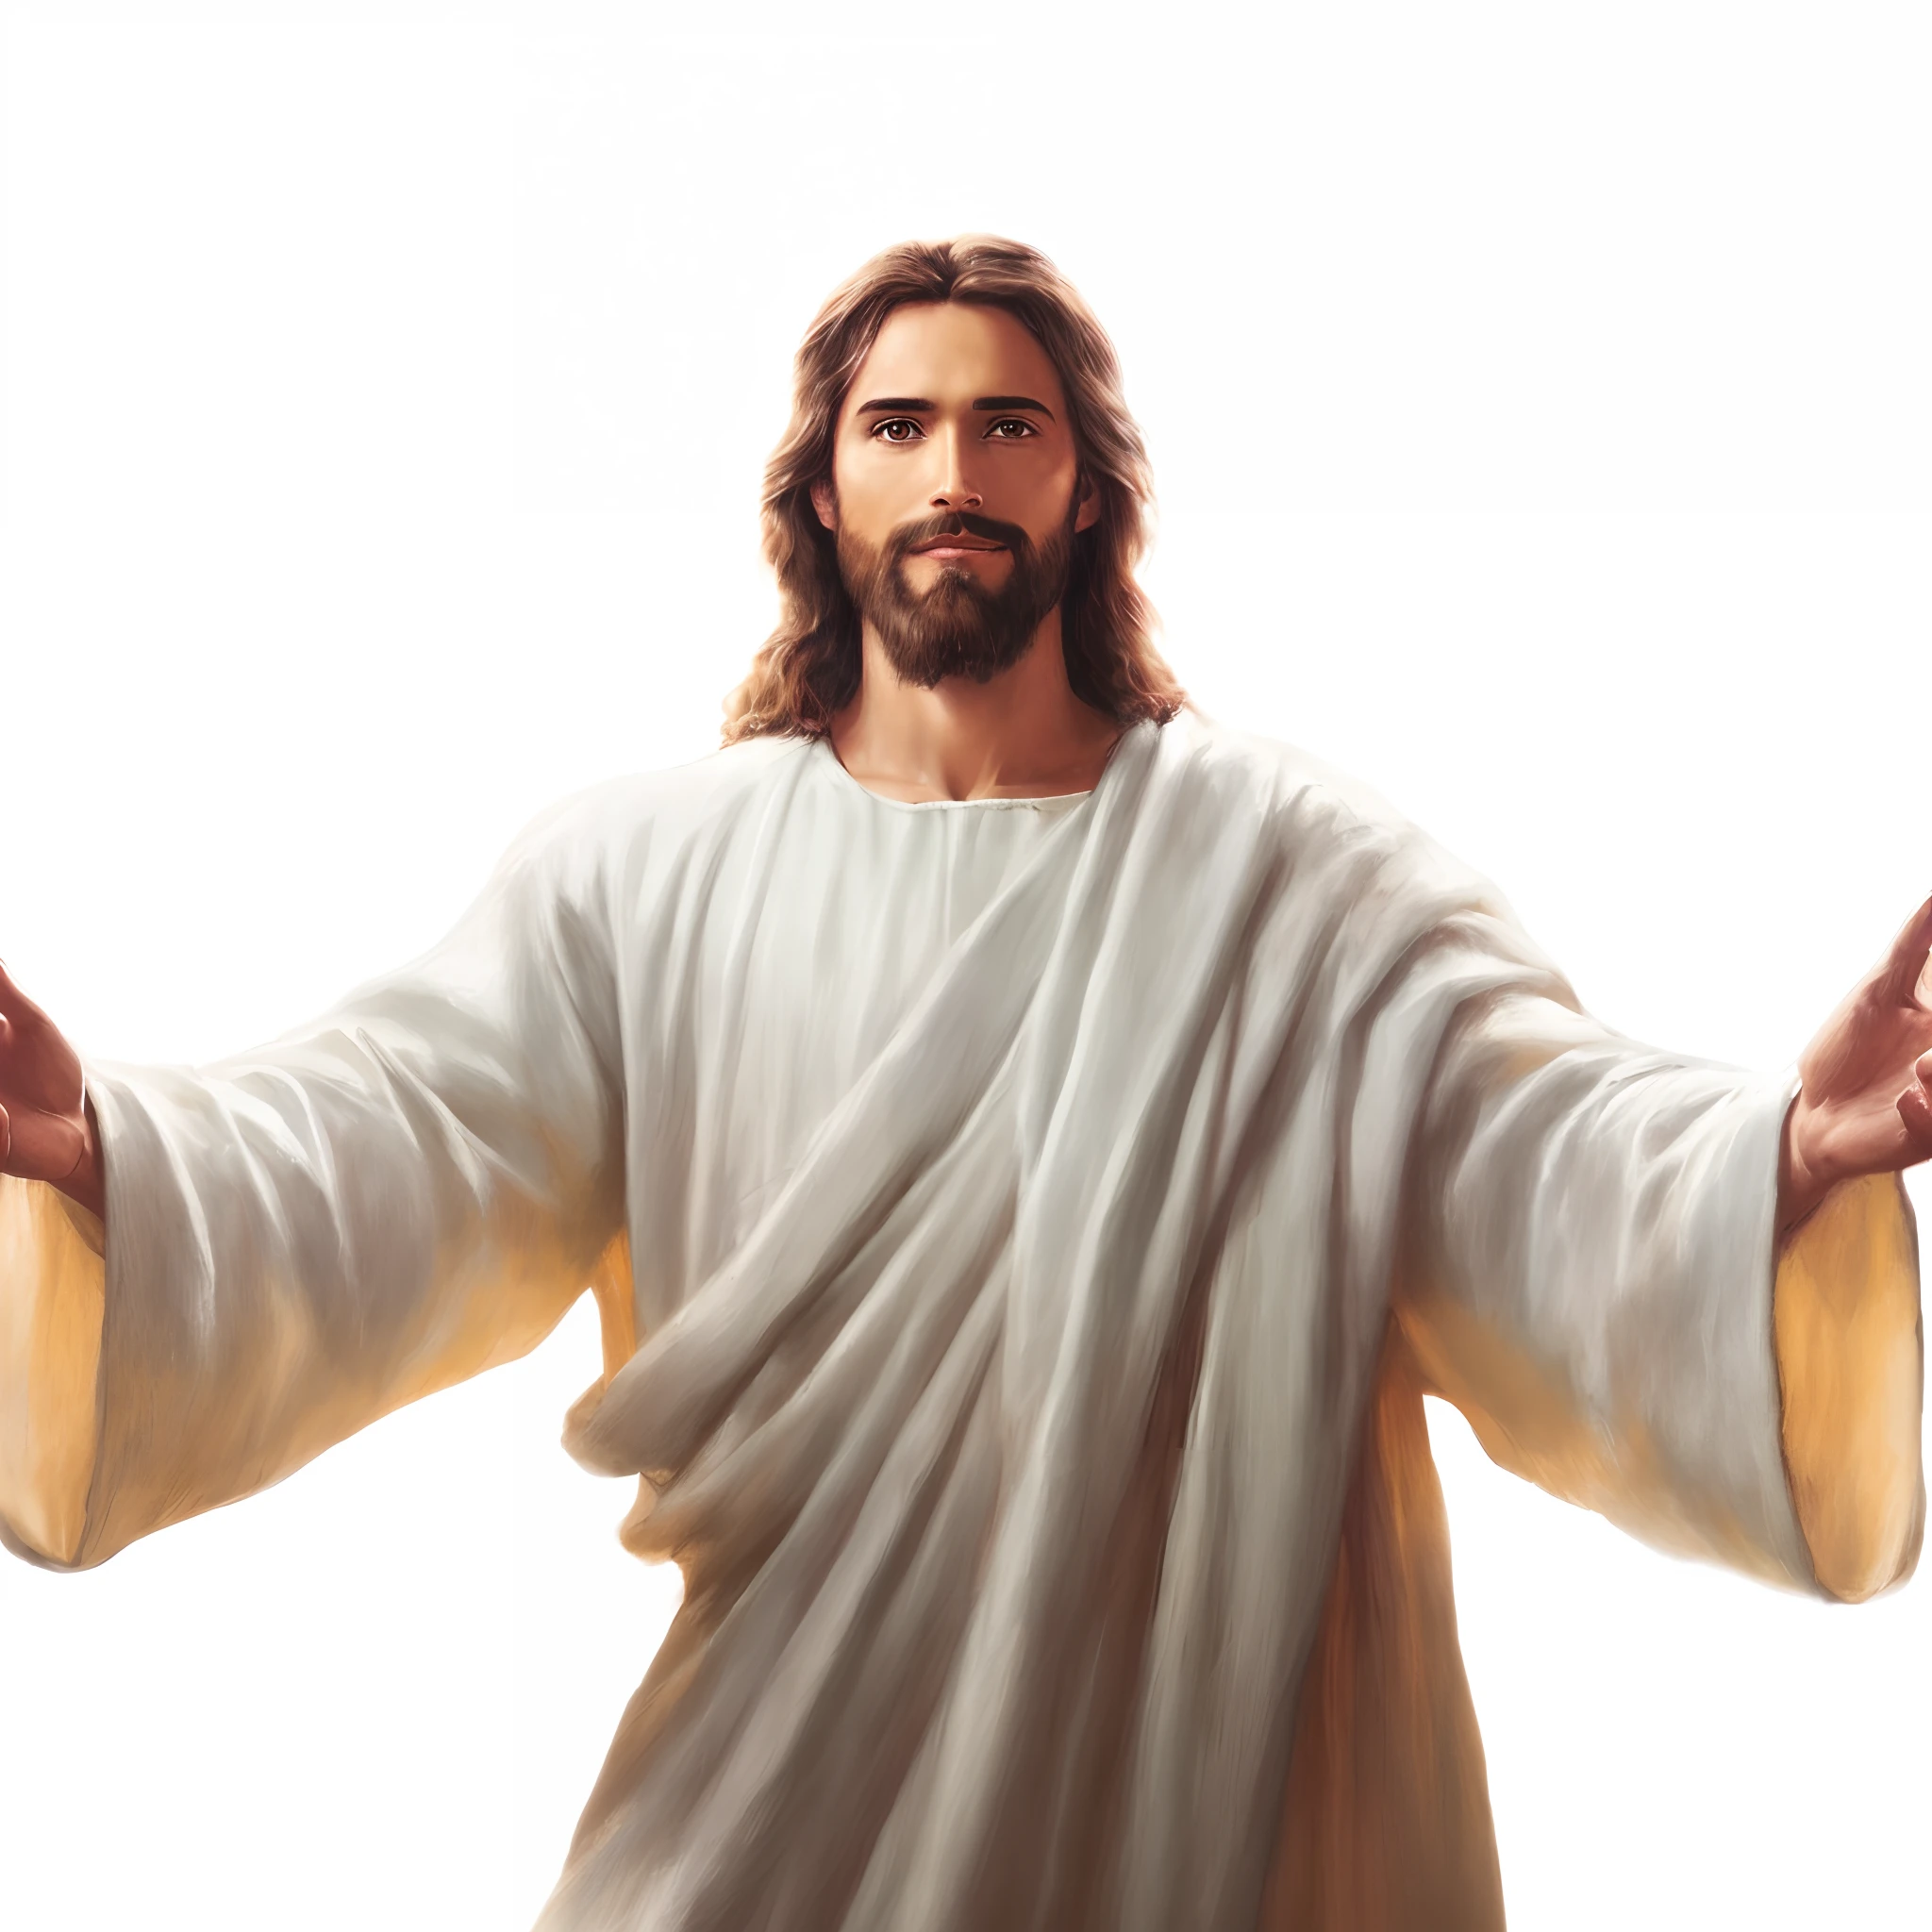 A closeup of พระเยซู with outstretched arms, พระเยซู Cristo, เขาทักทายคุณอย่างอบอุ่น, แขนของเขากางออก, พระเยซู, Vestido como พระเยซู Cristo, Retrato de พระเยซู Cristo, พระเจ้าและพระผู้ช่วยให้รอด, พระเจ้าผู้ทรงฤทธานุภาพหนุ่ม, พระเยซู Gigachad, แขนของเขากางออก. พร้อมที่จะบิน, พระเยซู Negro, rosto de พระเยซู, พระเยซูชาวนาซาเร็ธ